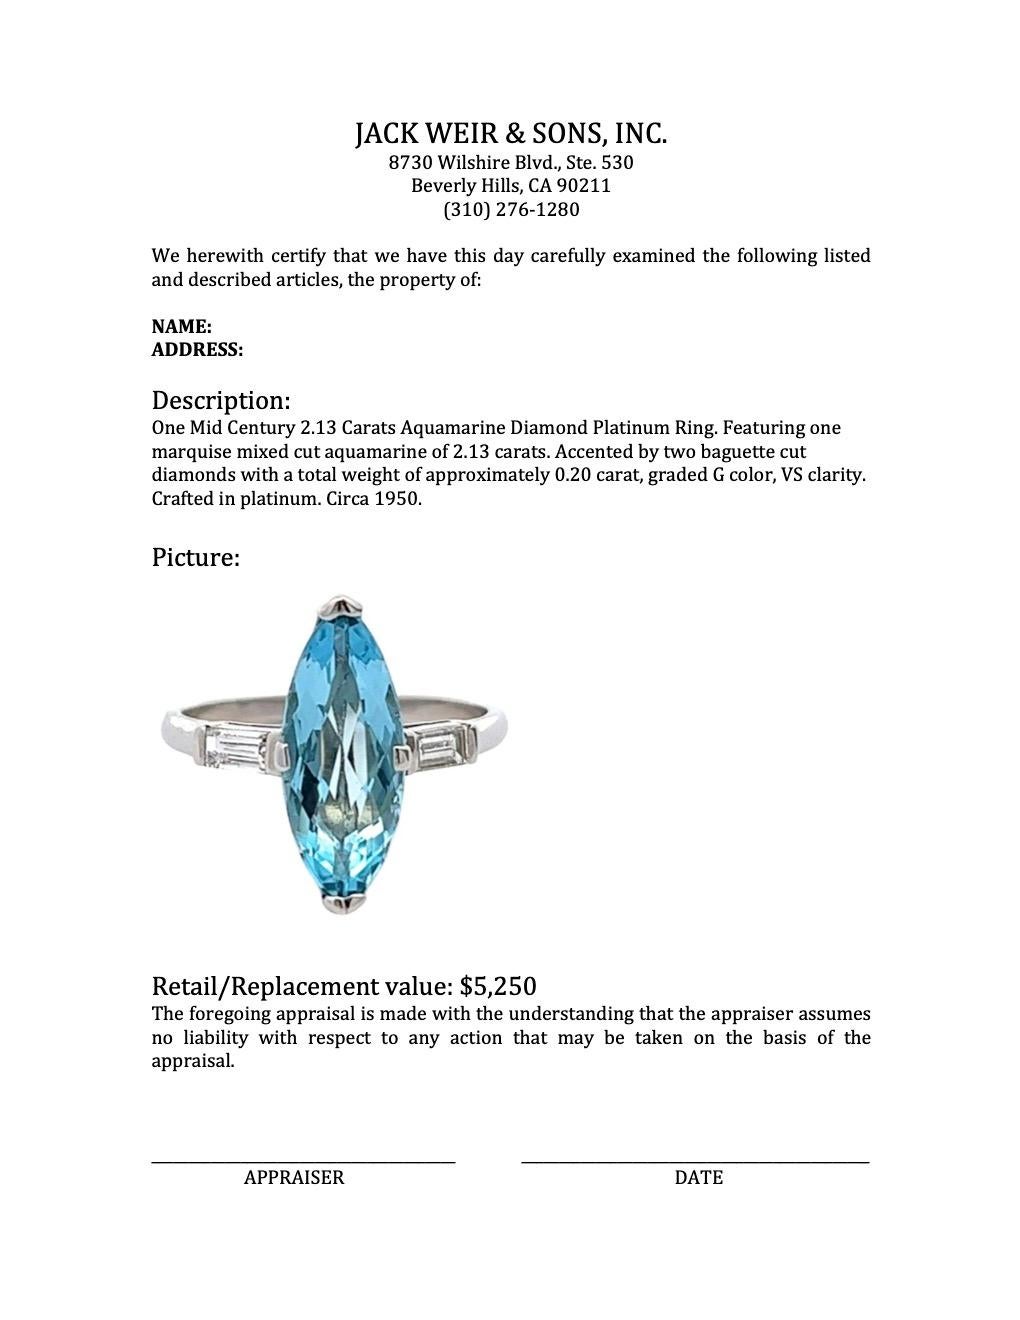 Midcentury 2.13 Carats Aquamarine Diamond Platinum Ring 2